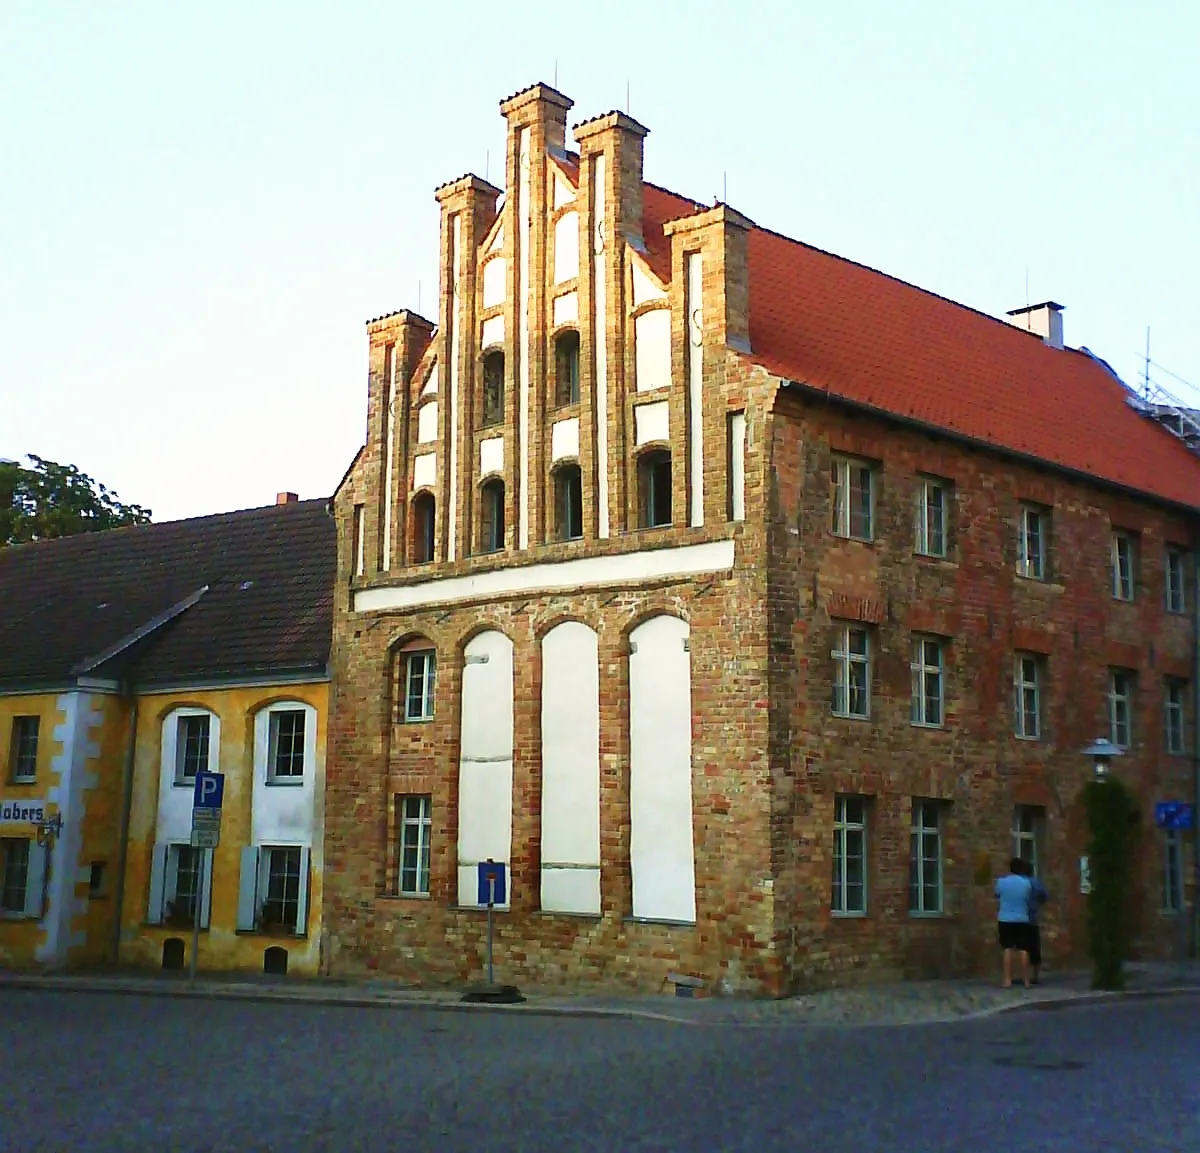 Image of Mecklenburg-Vorpommern